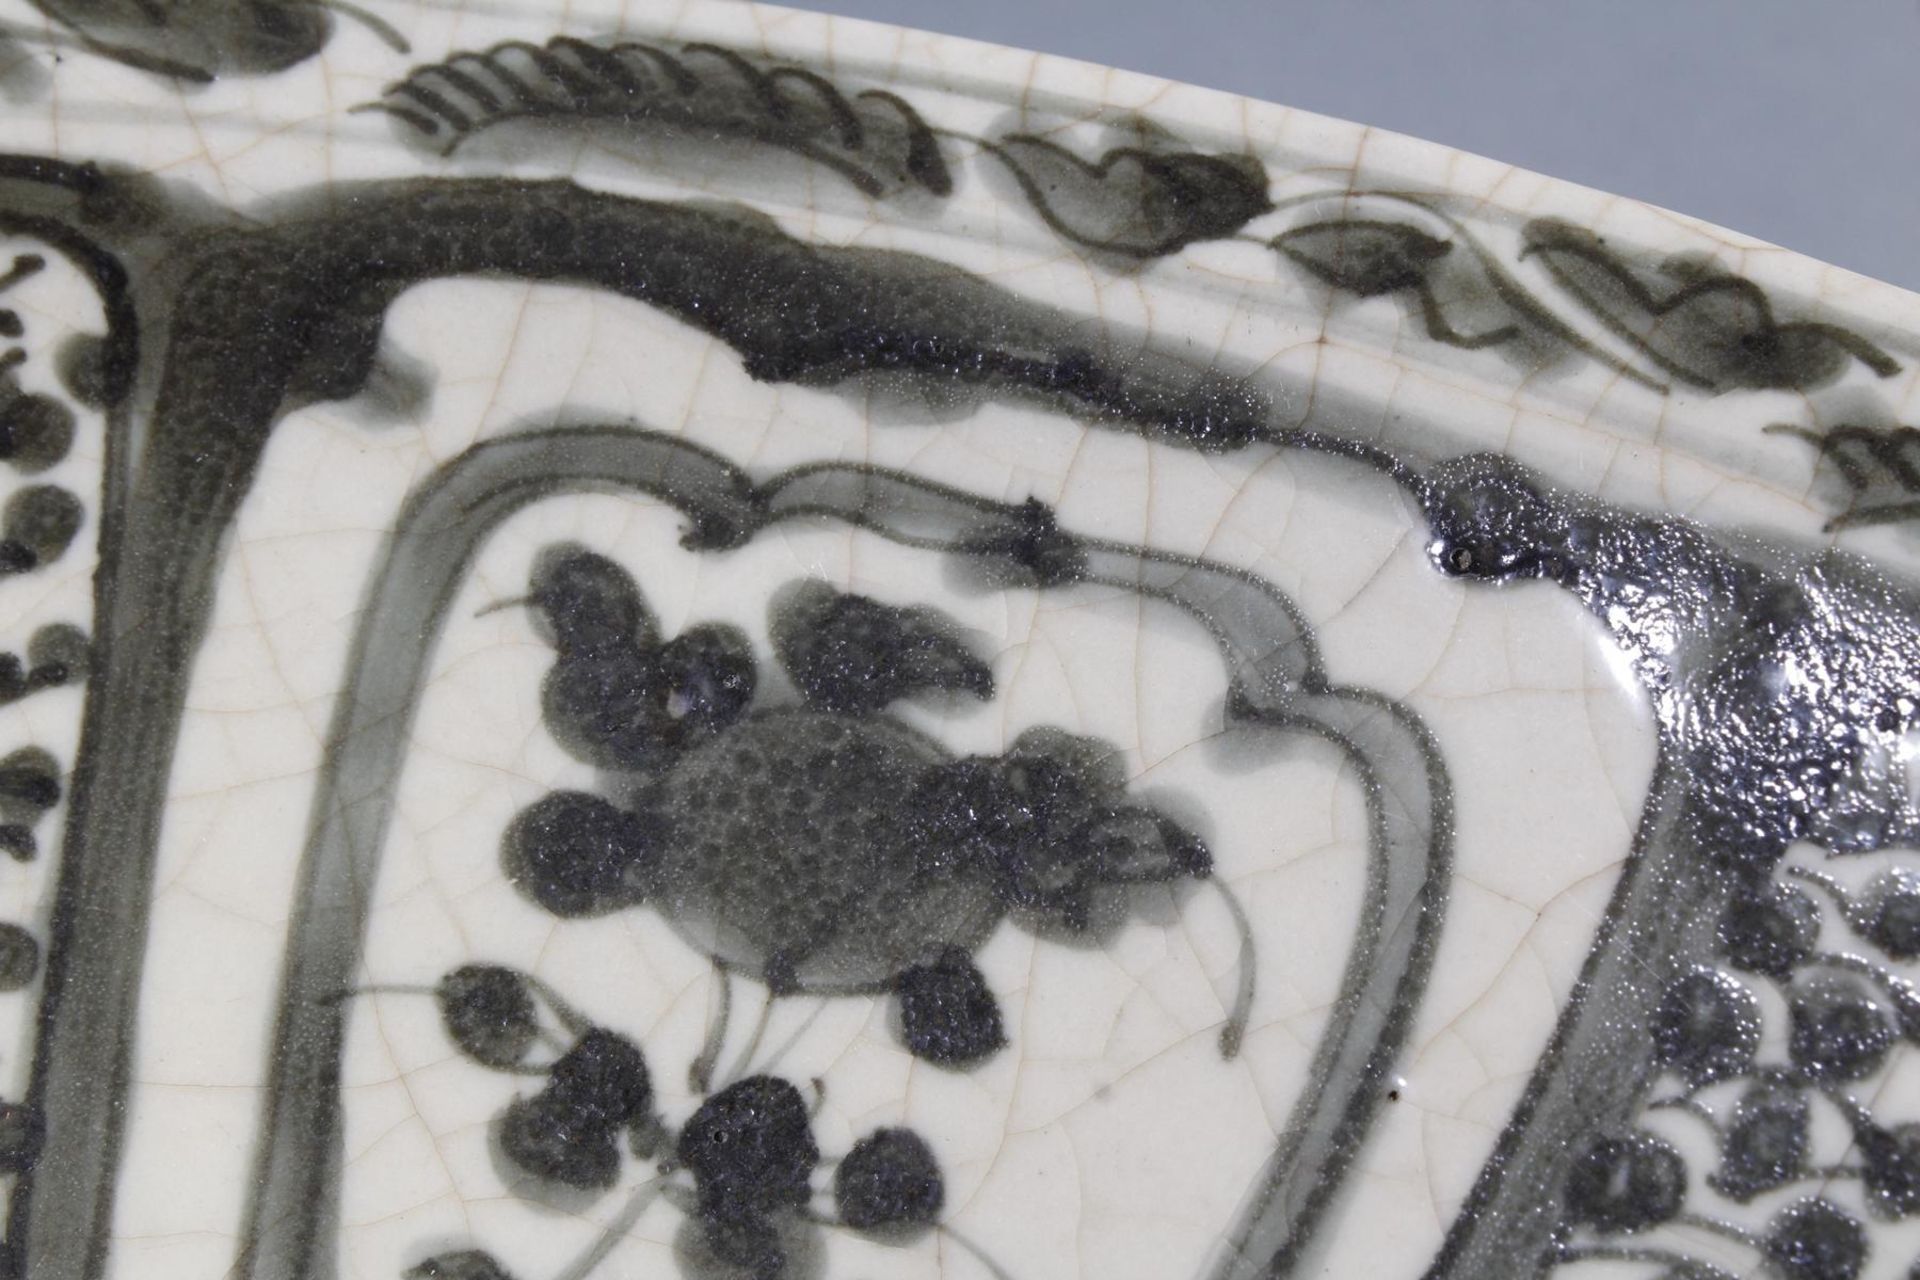 Porzellanschale mit Unterglasurblauer Malerei,China Ming - Dynastie 16 Jahrhundert - Image 6 of 12